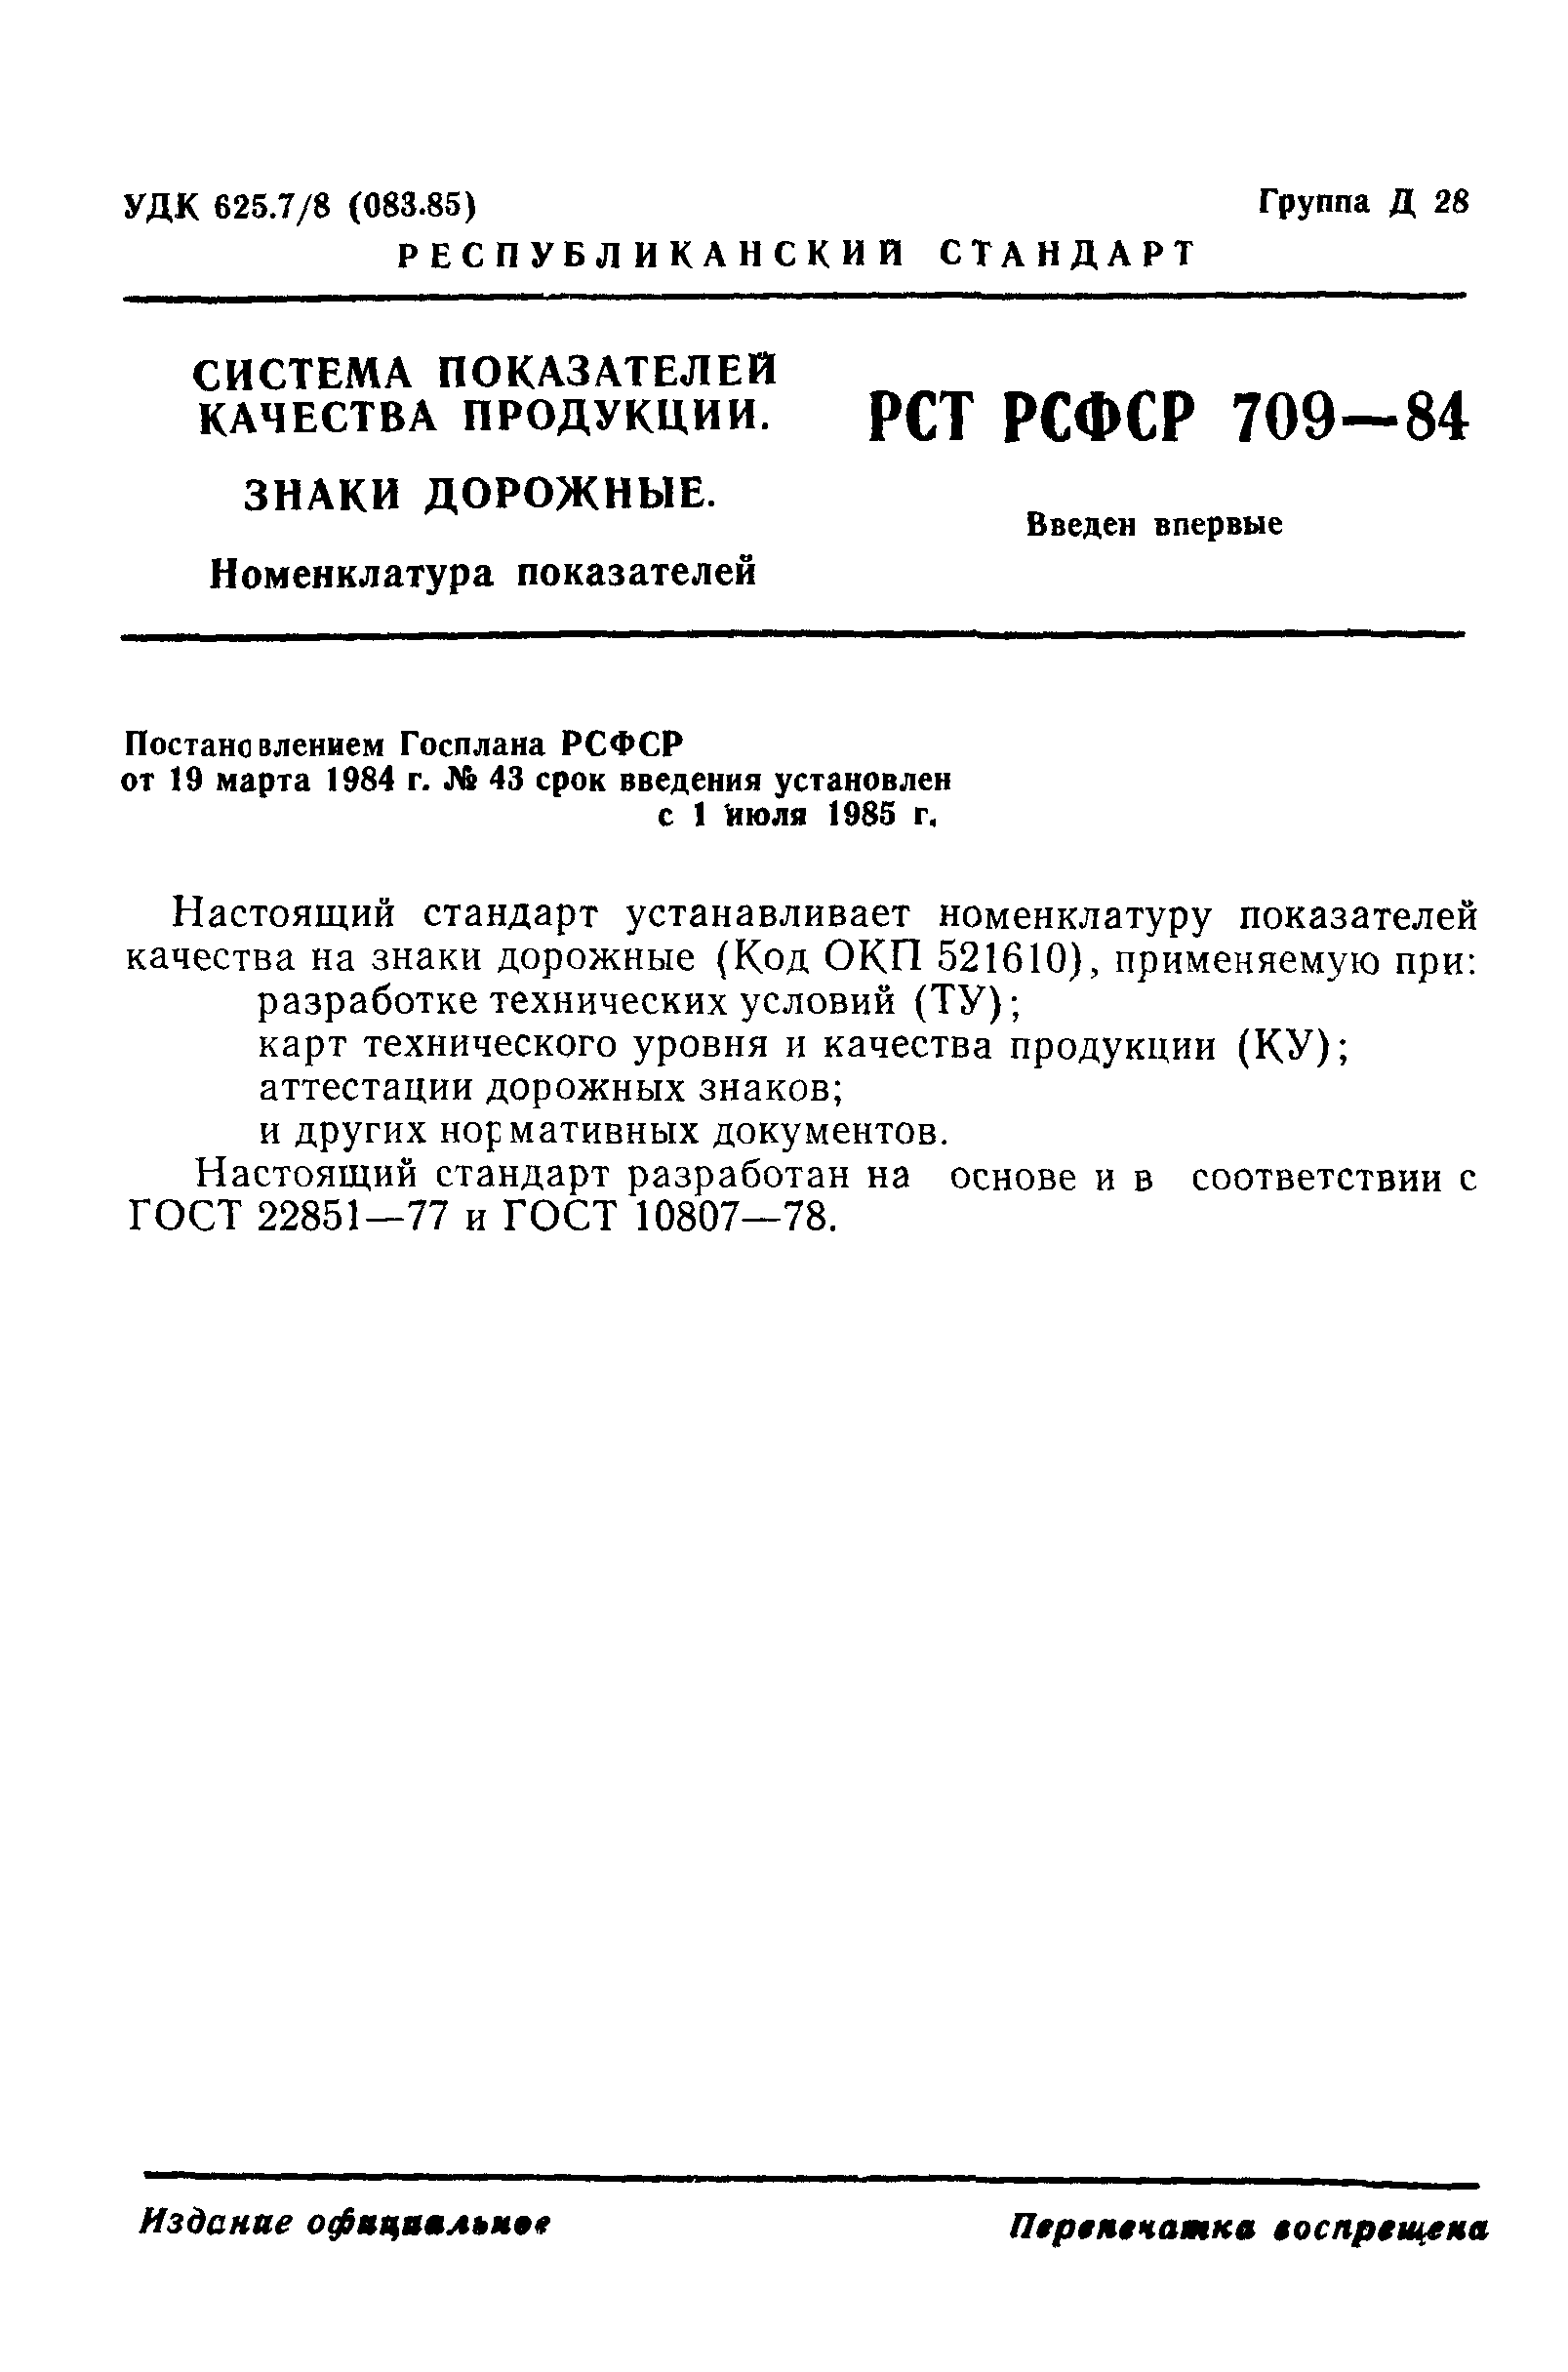 РСТ РСФСР 709-84